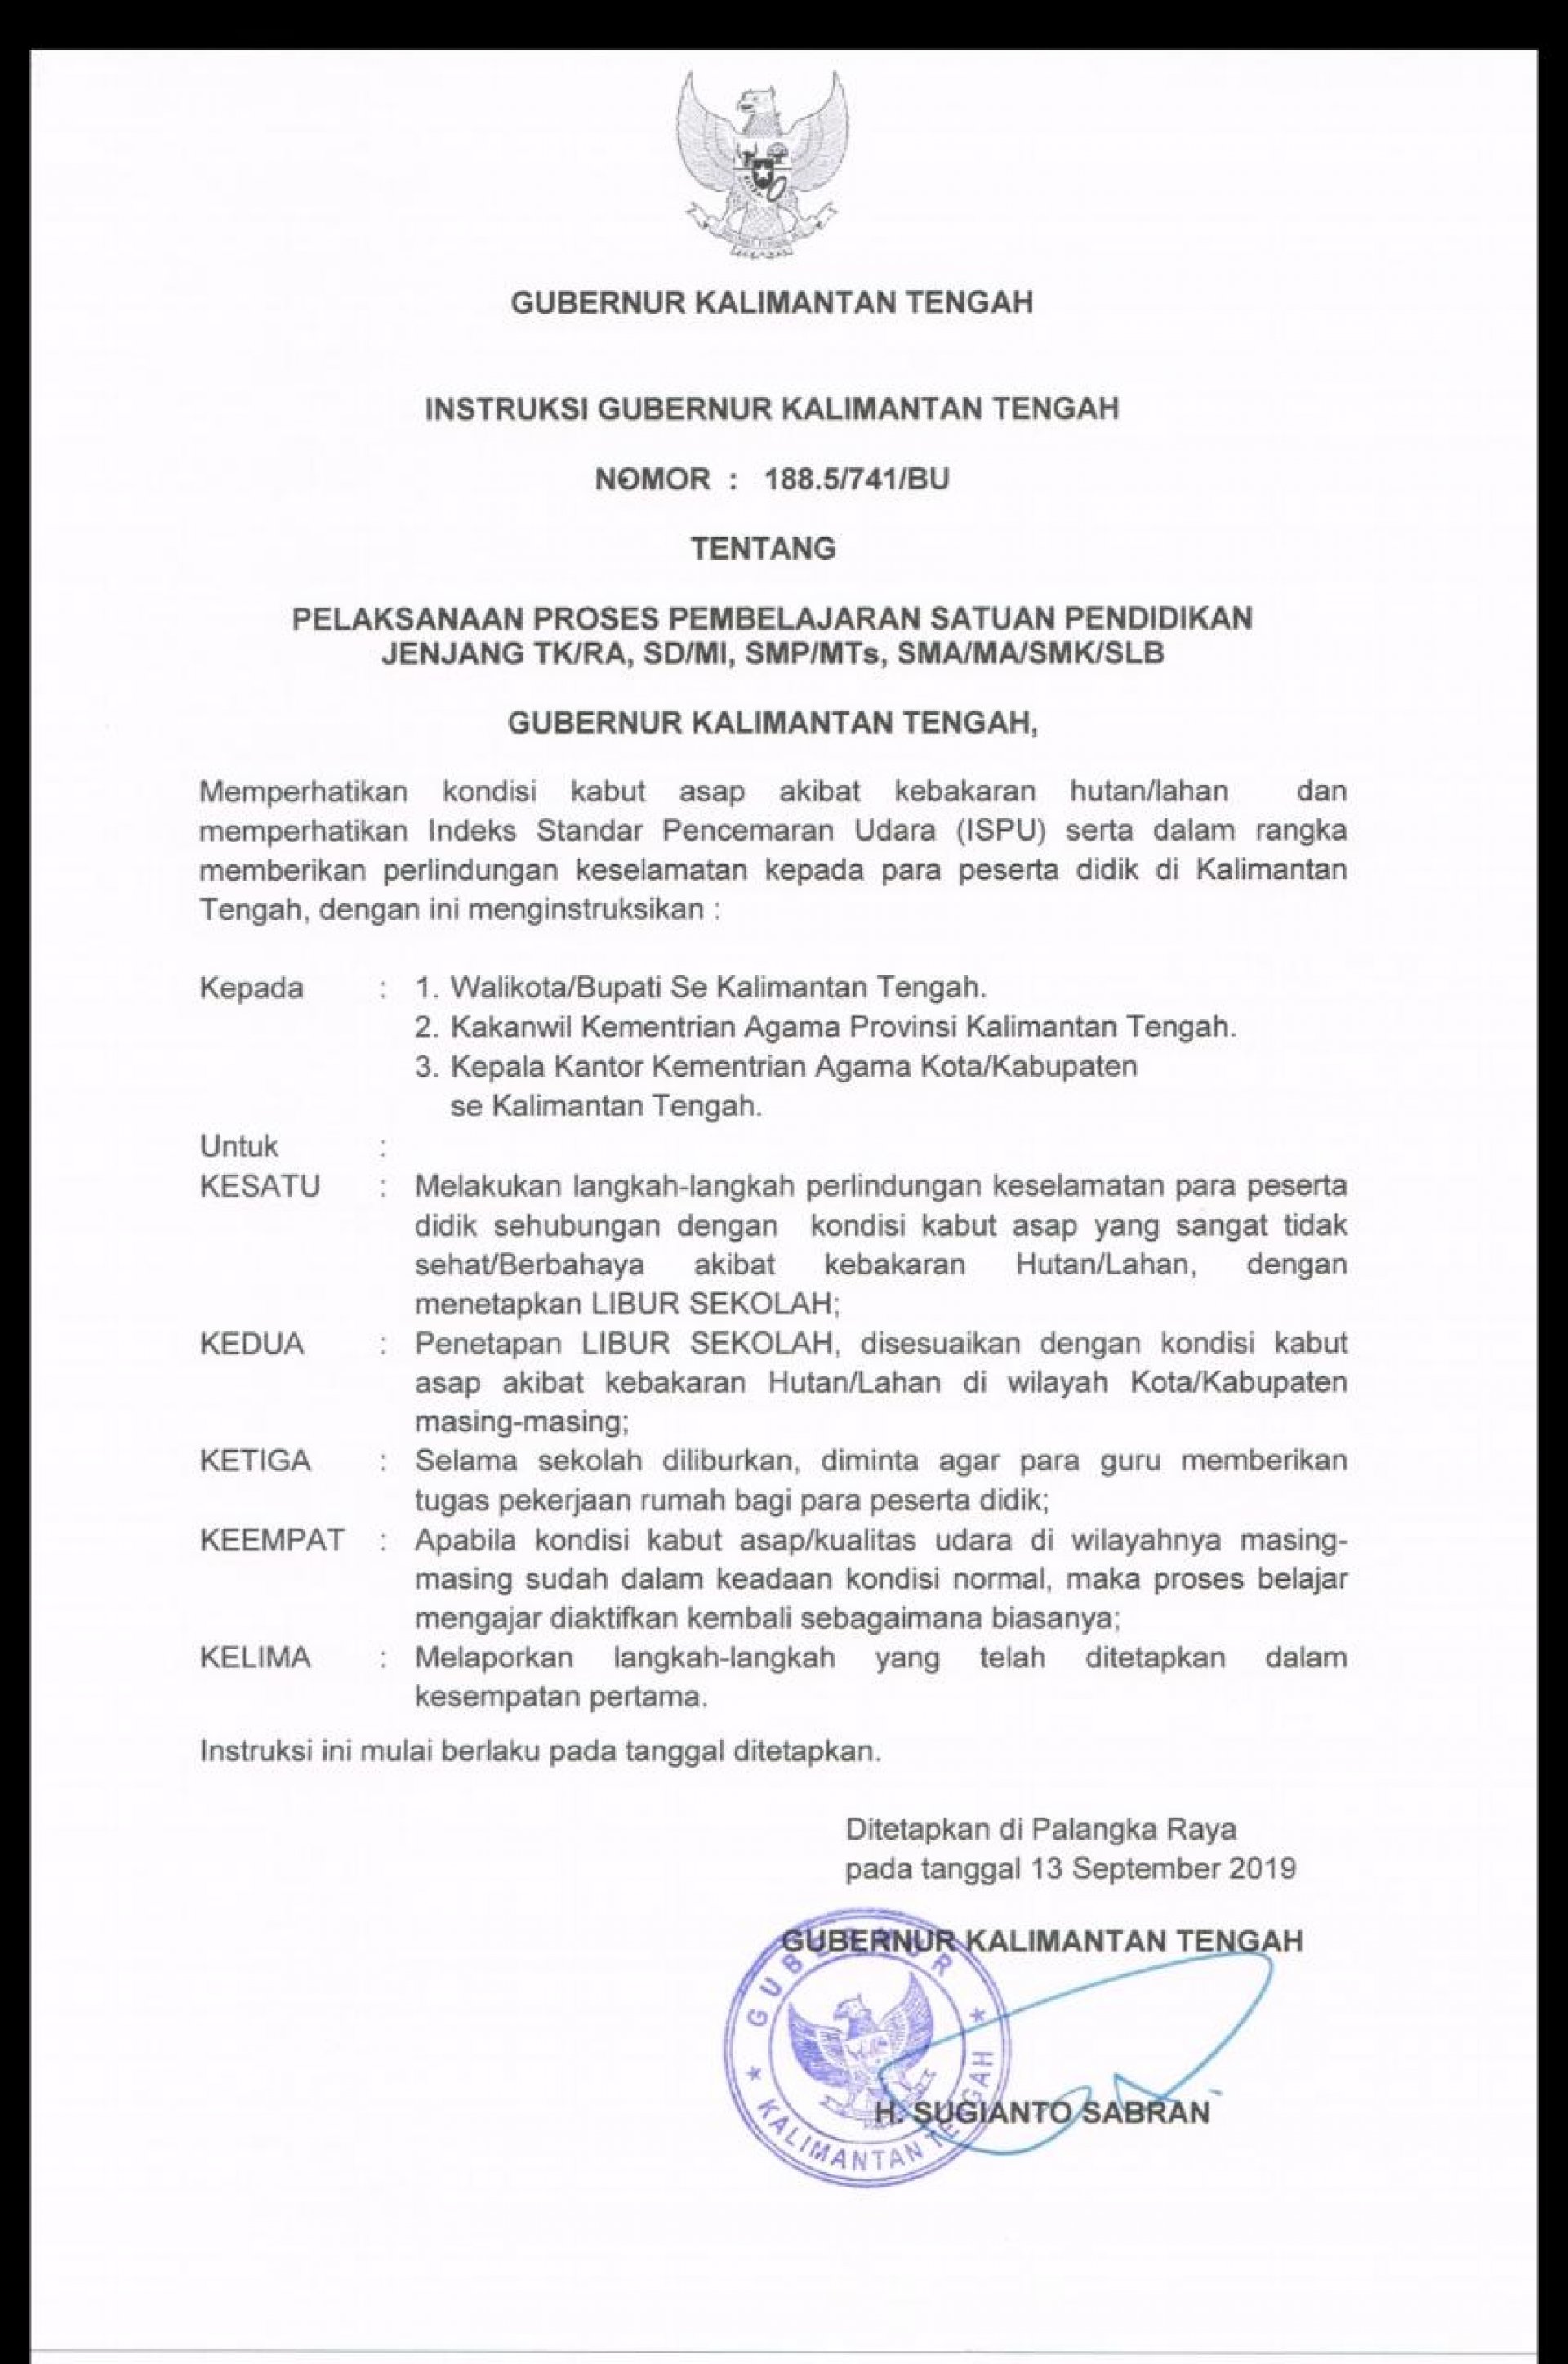 Instruksi Gubernur Kalimantan Tengah Nomor: 188.5/741/BU Tentang Pelaksanaan Proses Pembelajaran Satuan Pendidikan Jenjang TK/RA, SD/MI, SMP/MTs, SMA/MA/SMK/SLB